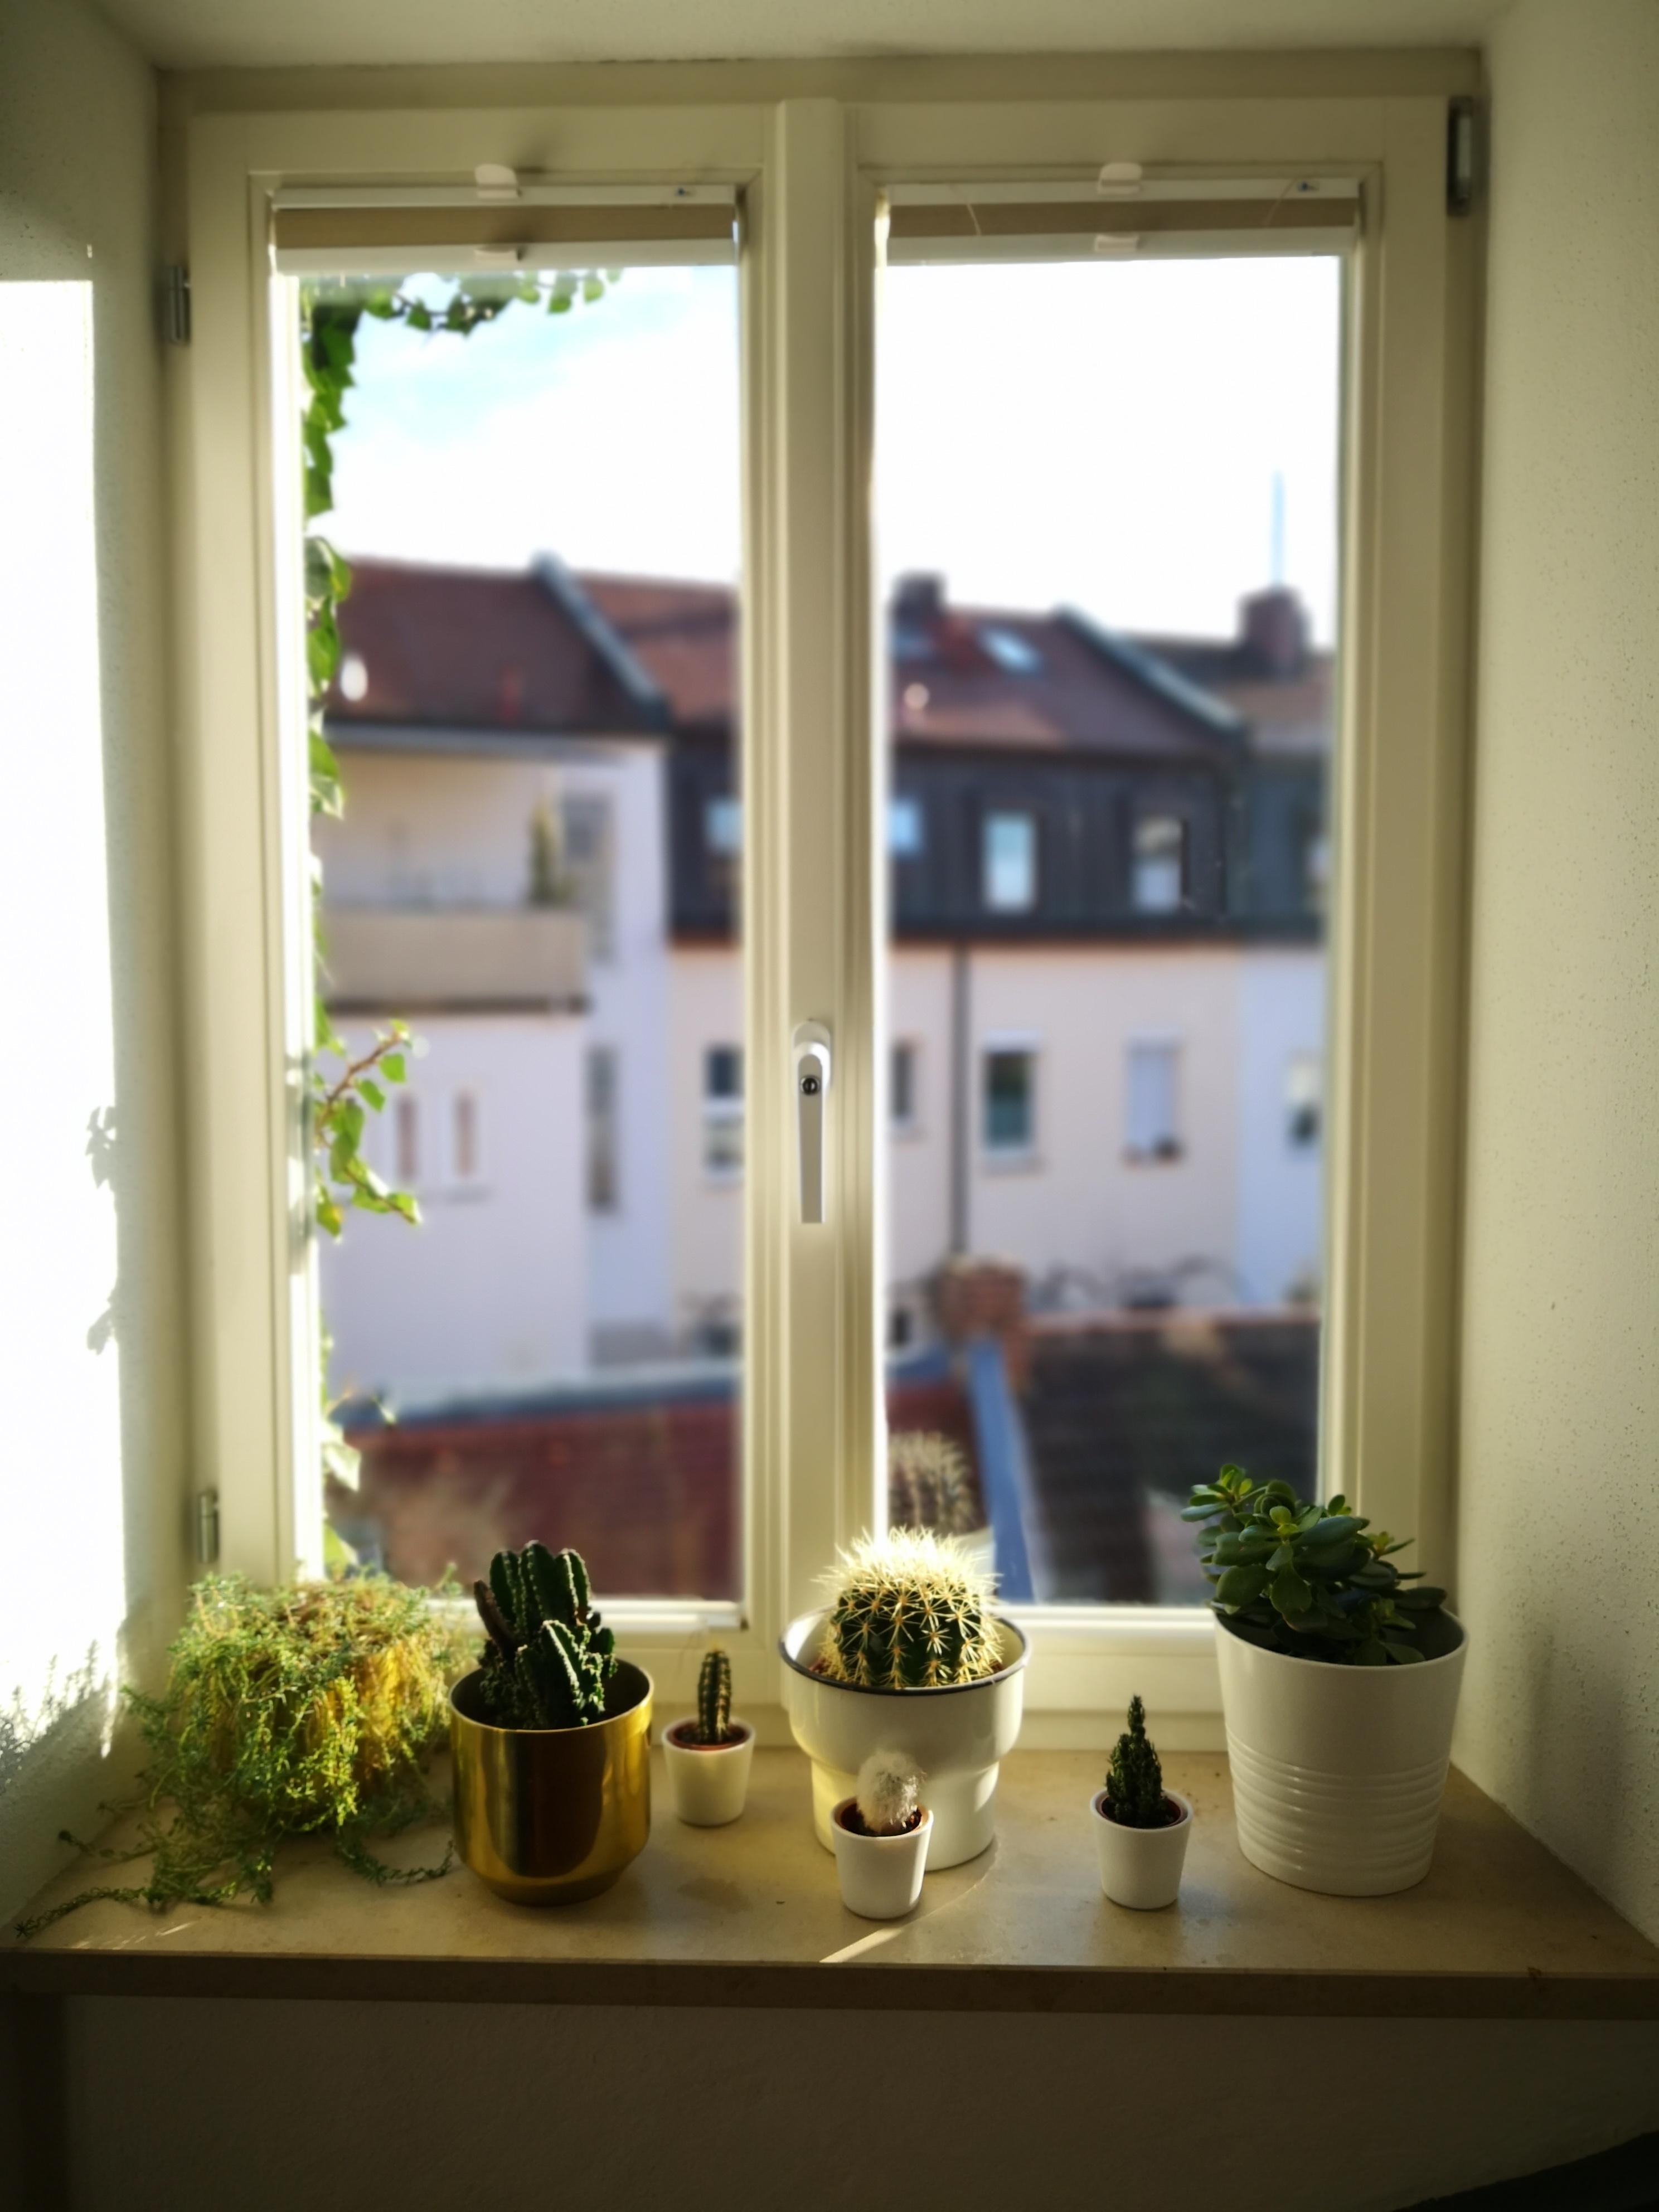 #window #plants #cacti #interior #home #livingchallenge